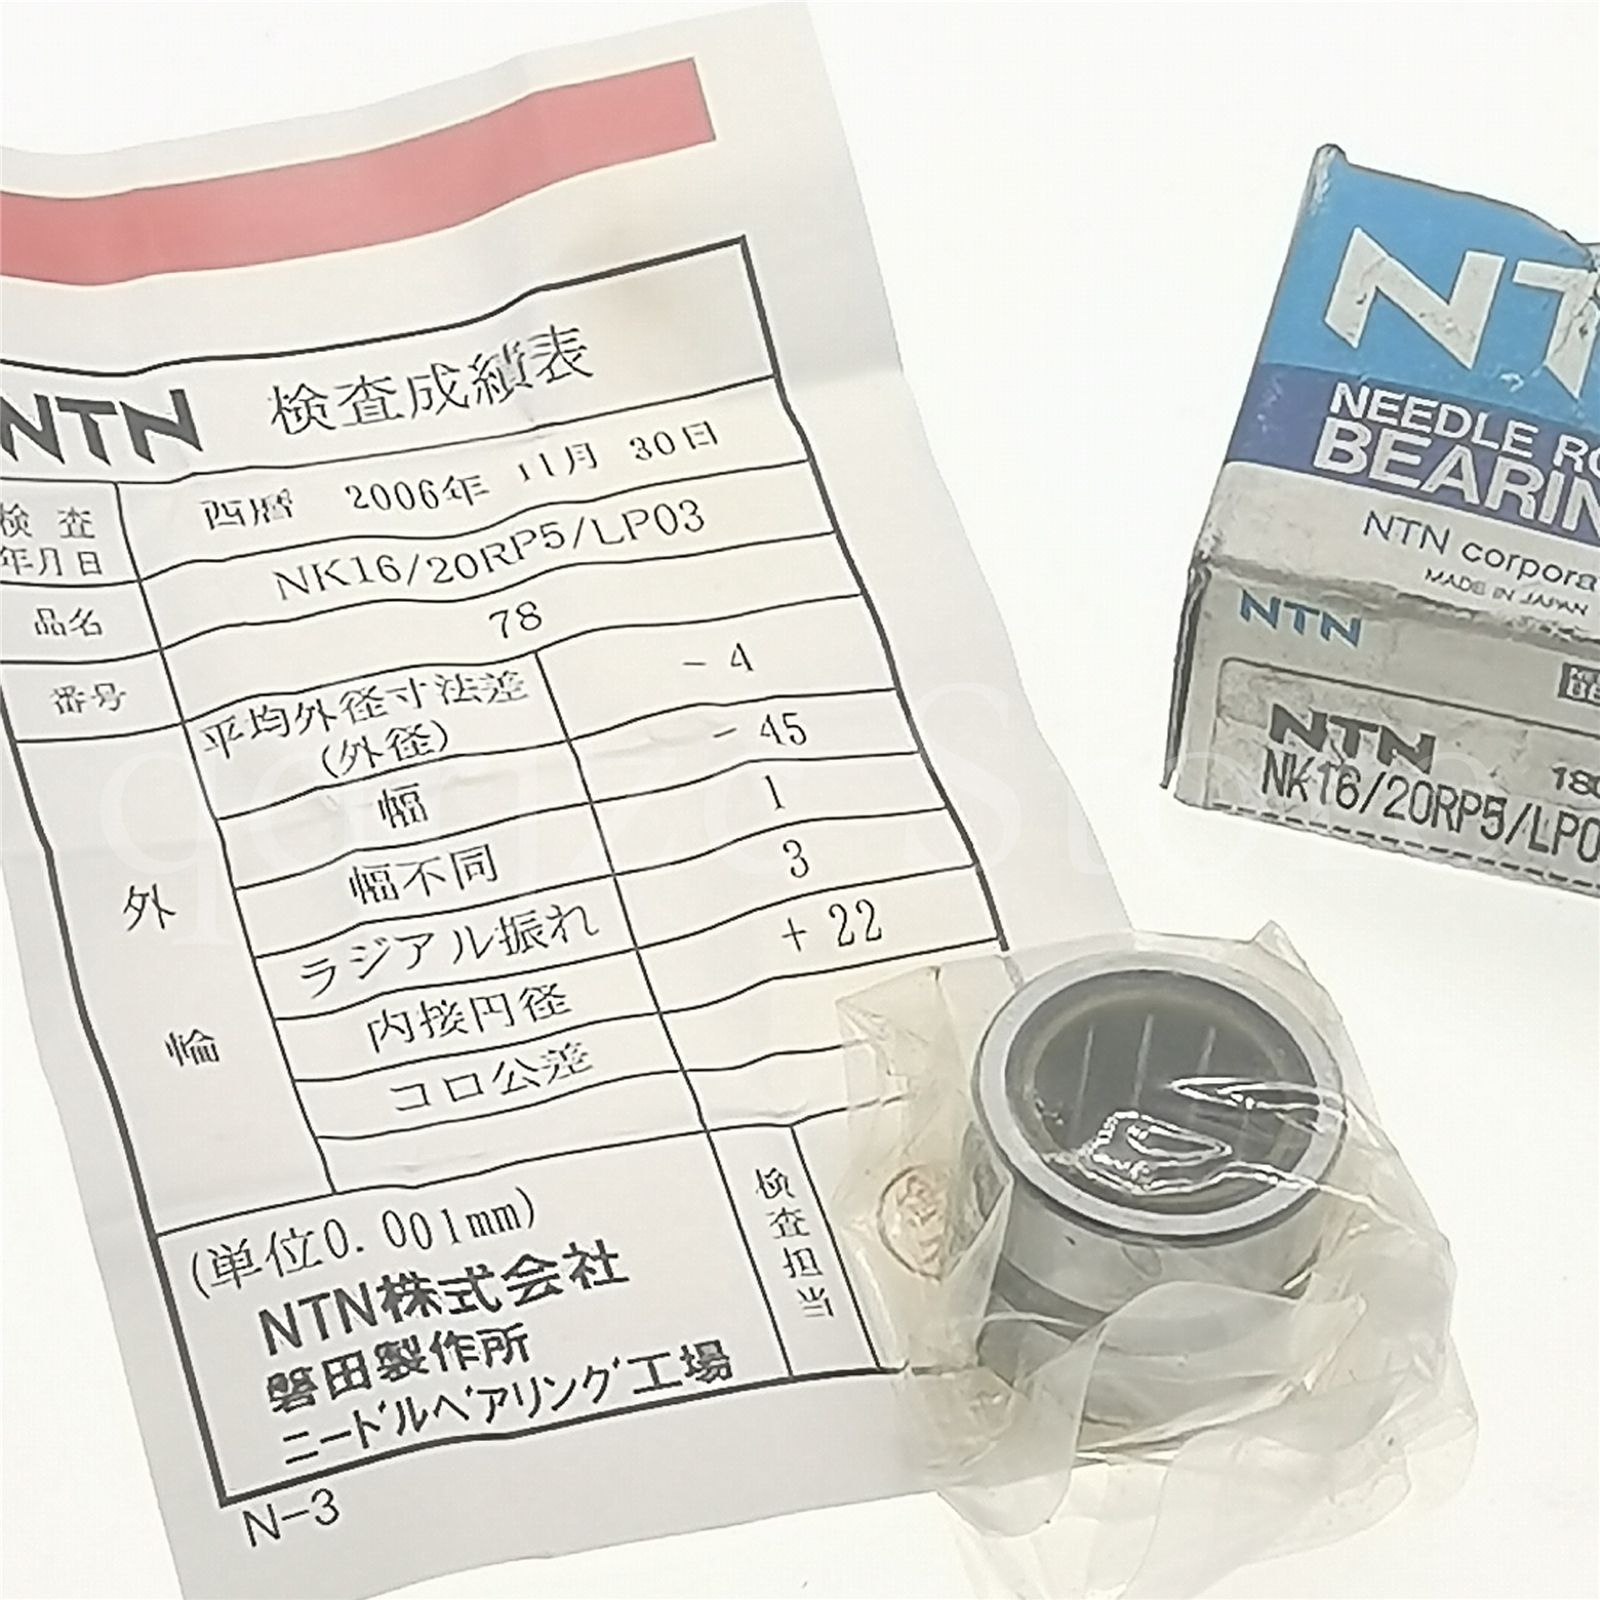 新作 人気 NTN ニードルベアリング NK17 20R ソリッド形針状ころ軸受